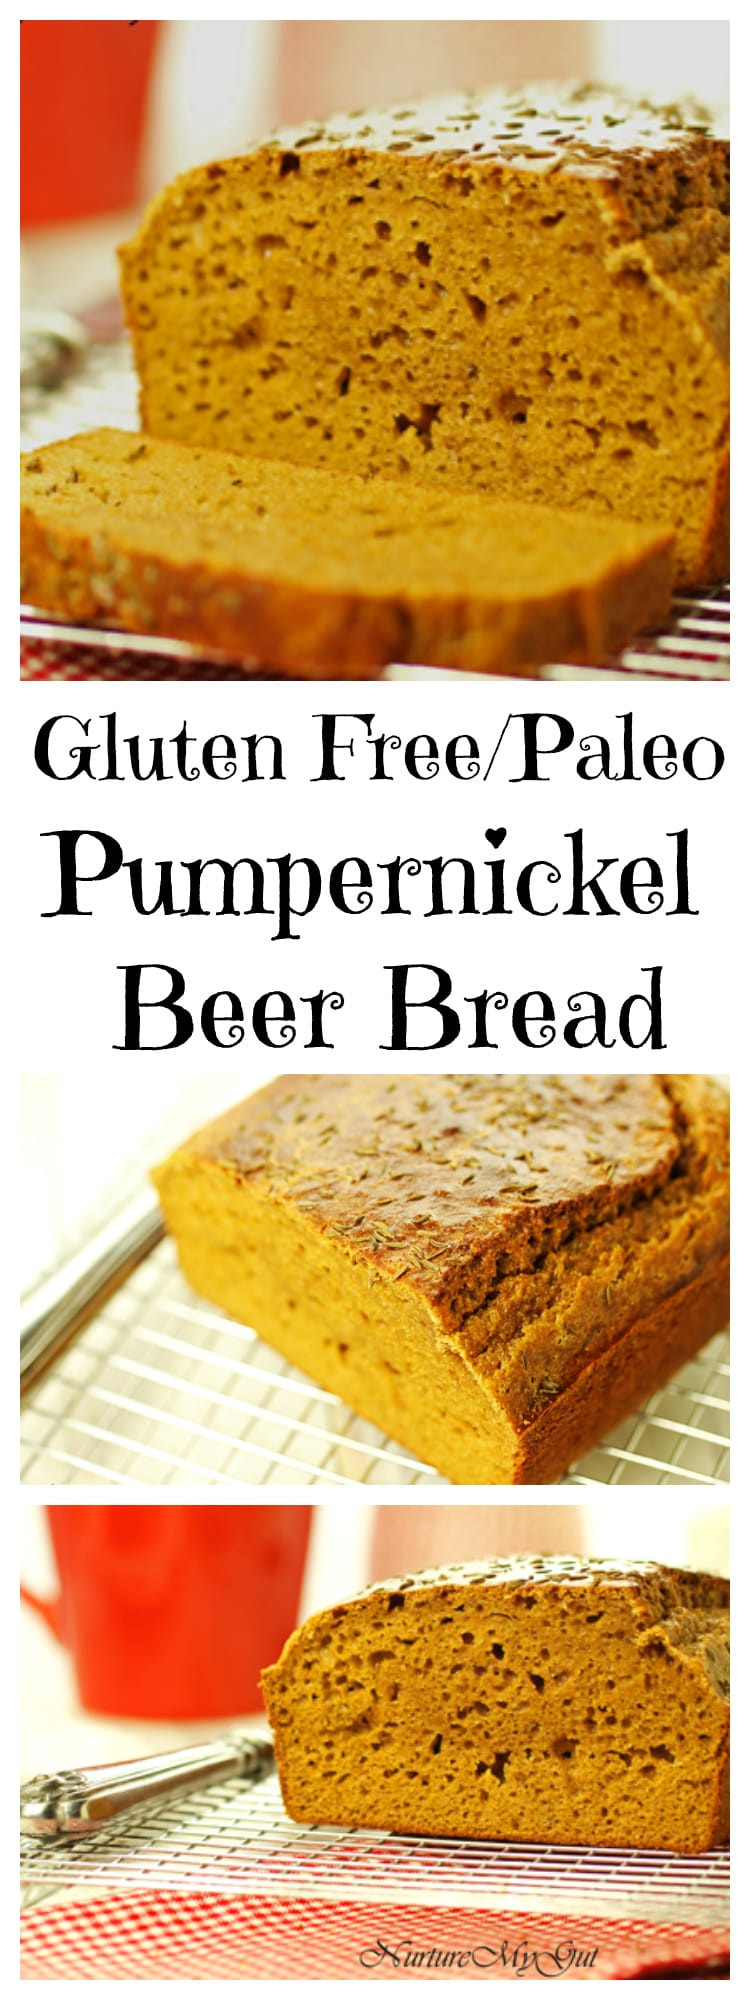 Pumpernickel Bread Gluten Free
 Gluten Free Pumpernickel Beer Bread Grain Free Dairy Free